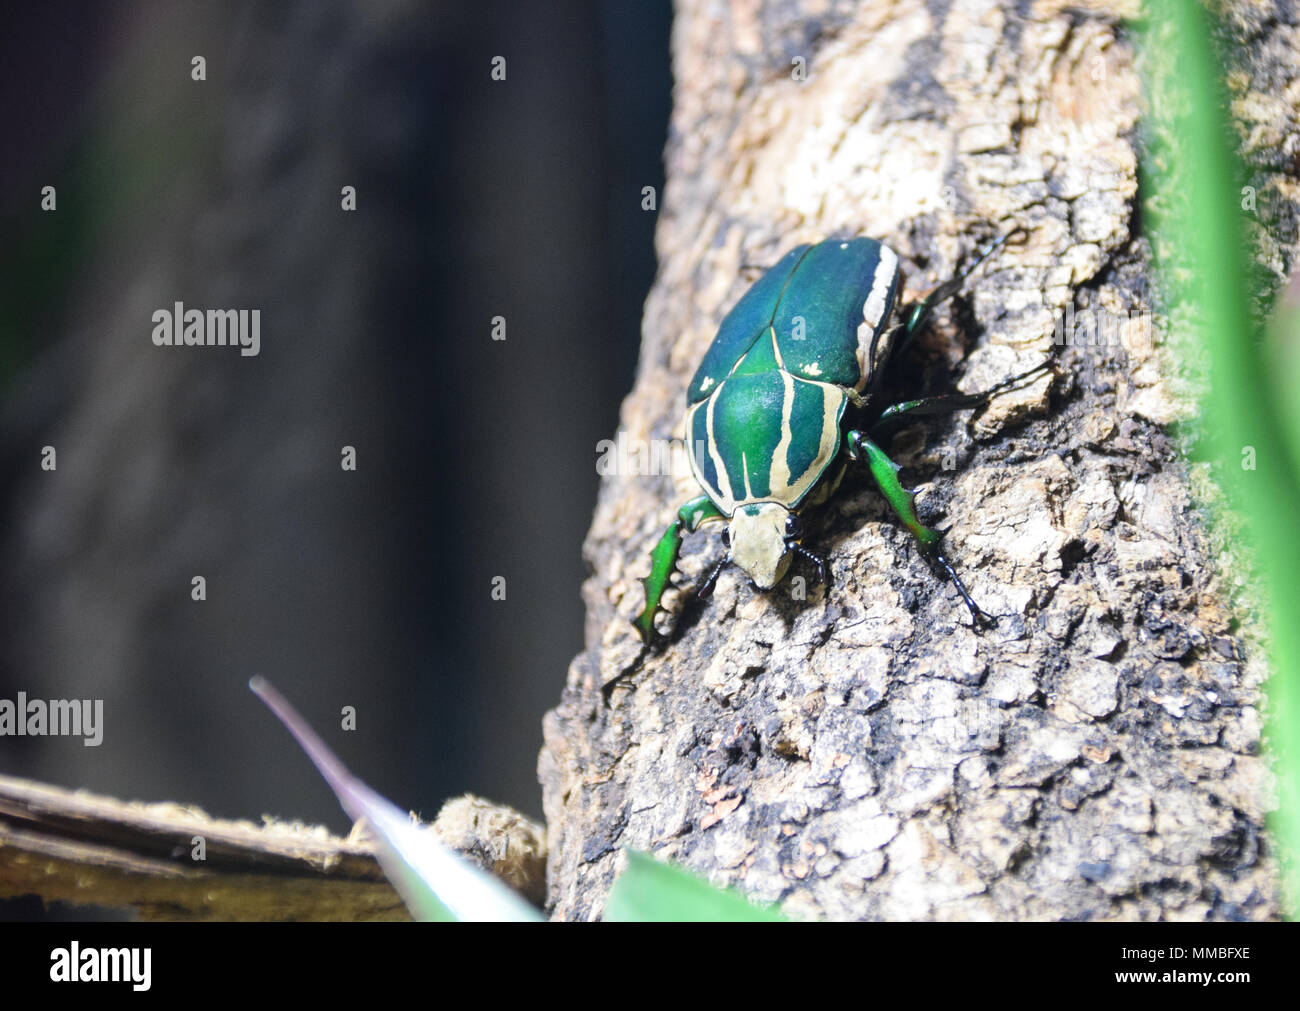 A Ugandan Flower Beetle standing on tree bark Stock Photo